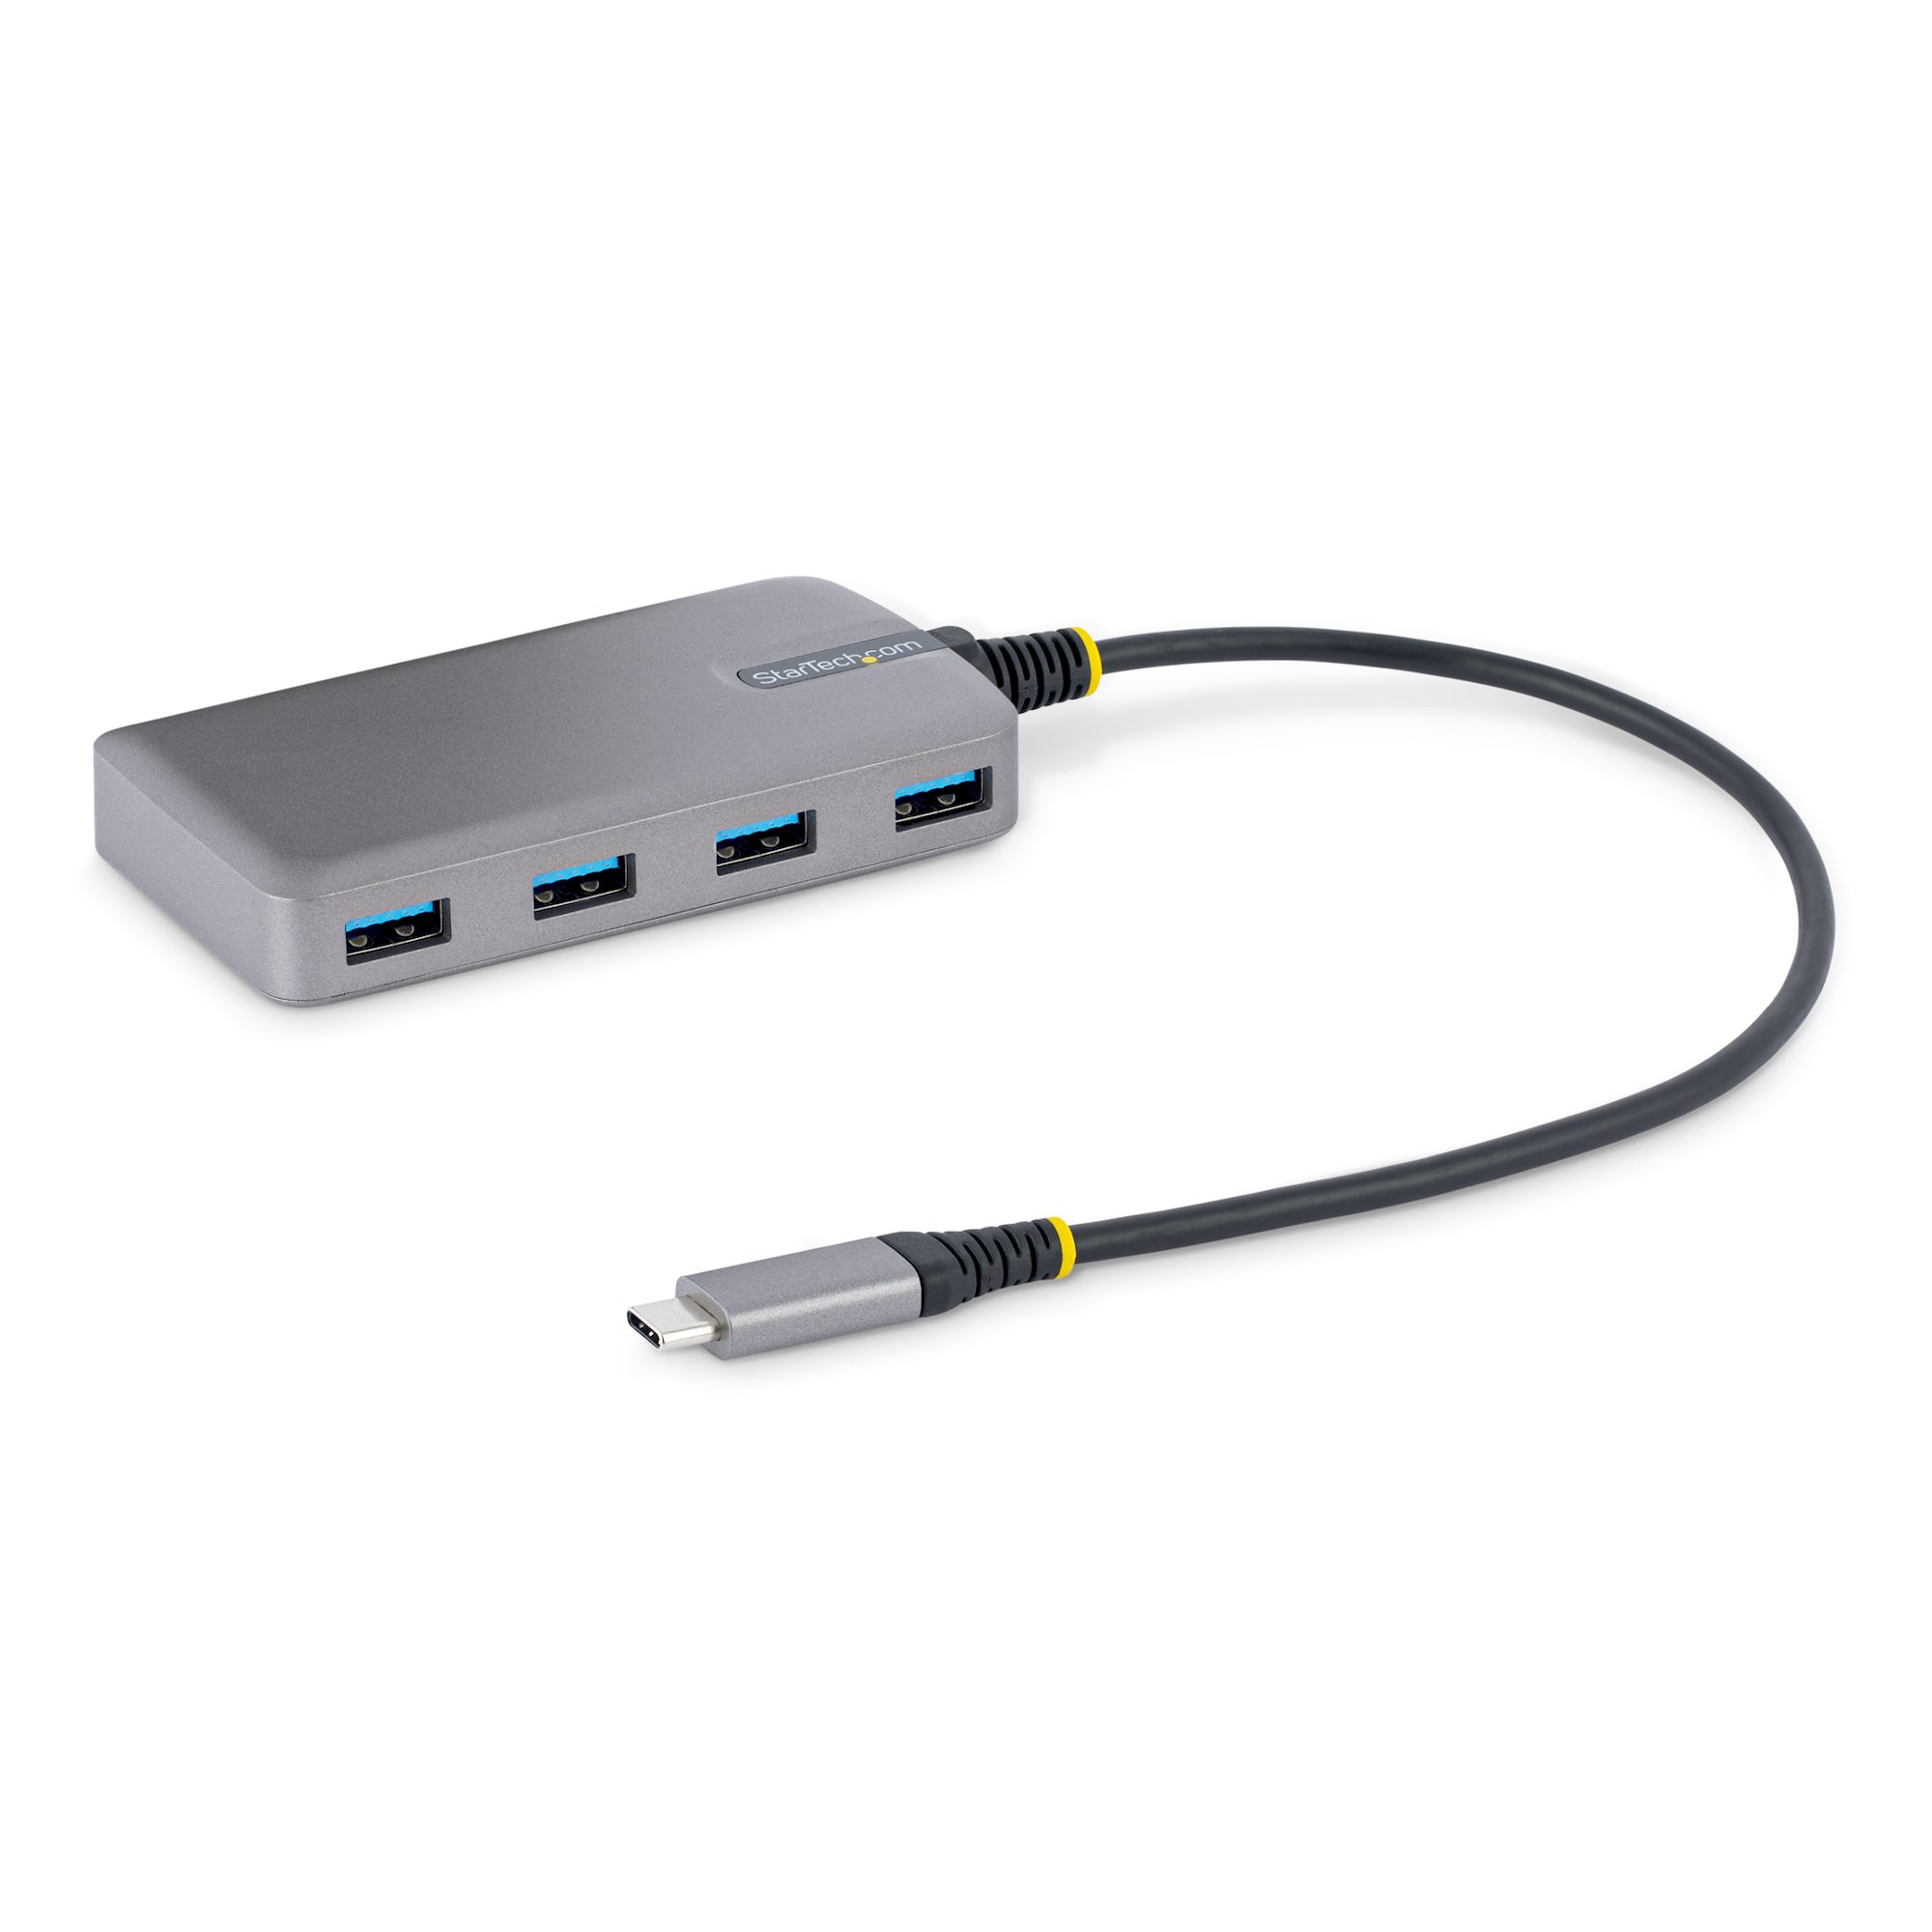 【5G4AB-USB-C-HUB】4-PORT USB-C HUB, 5GBPS, 4X USB-